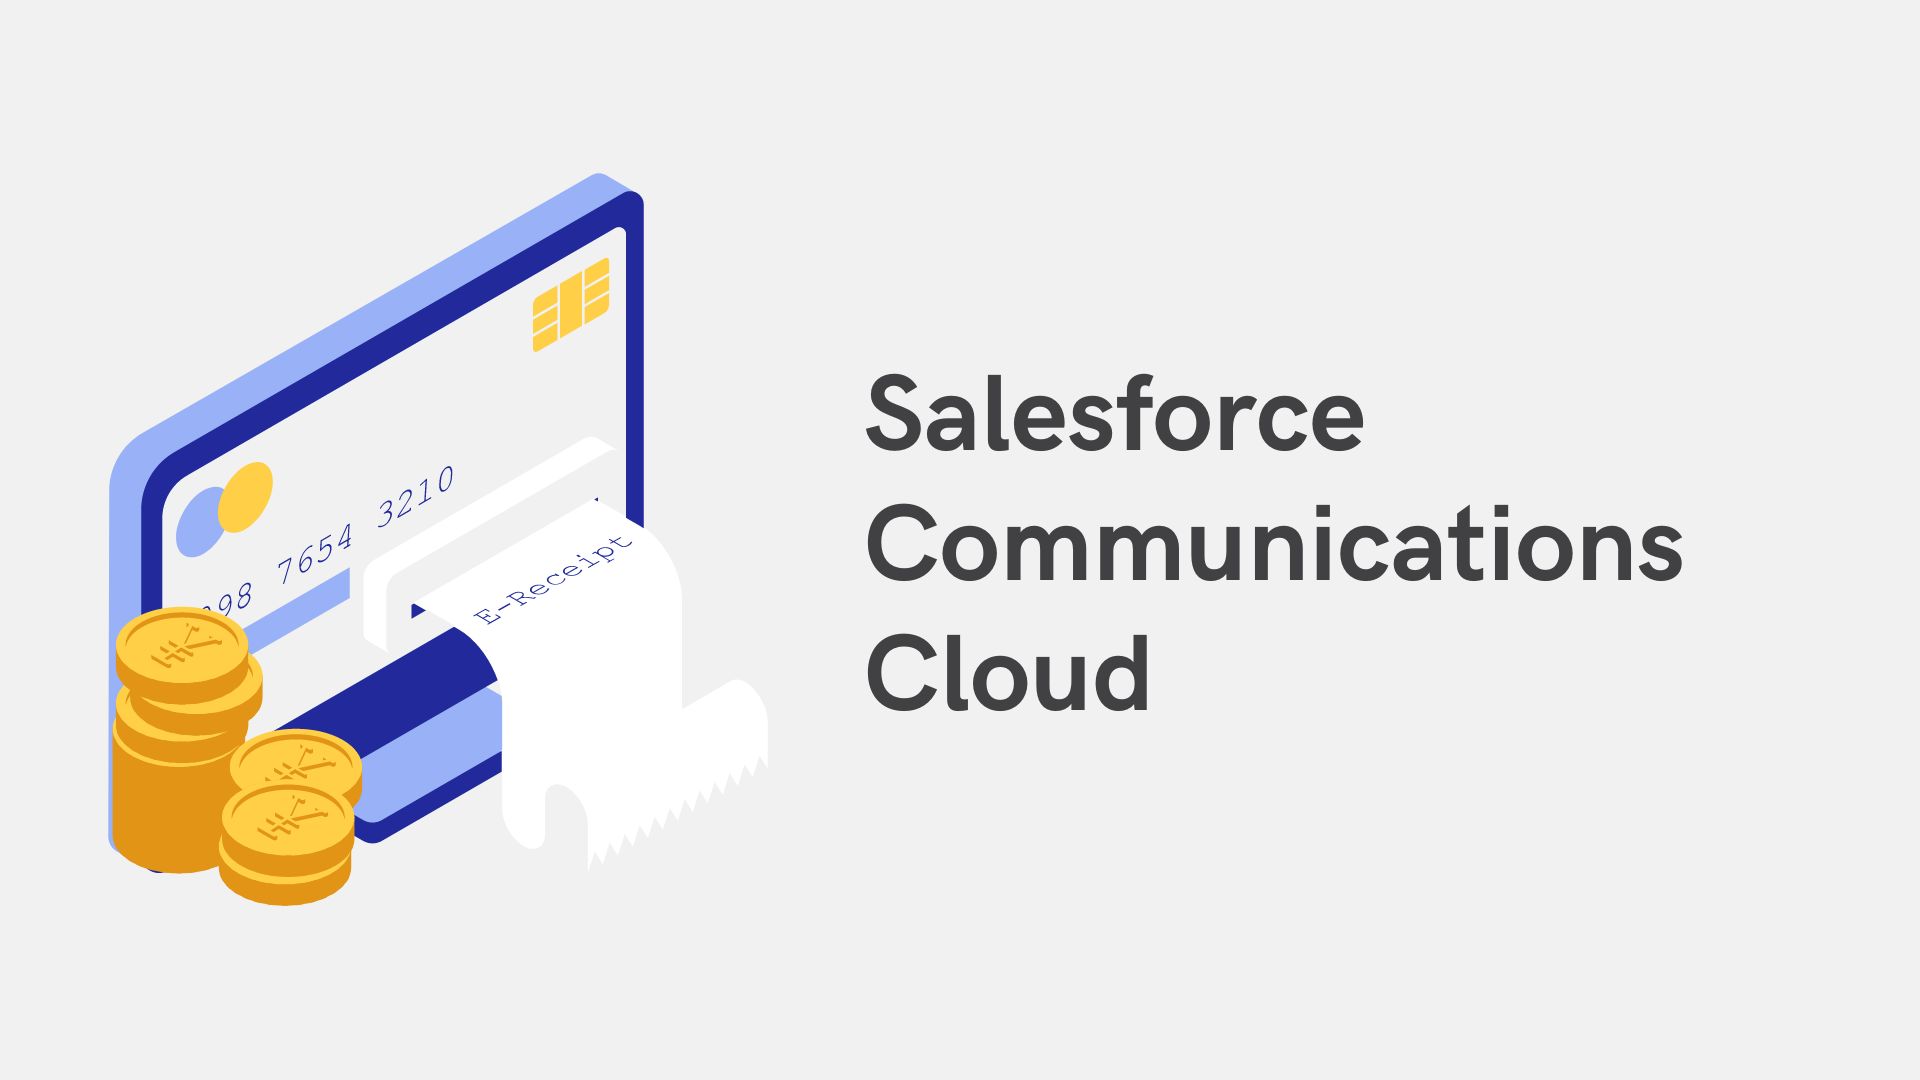 Salesforce Communications Cloud